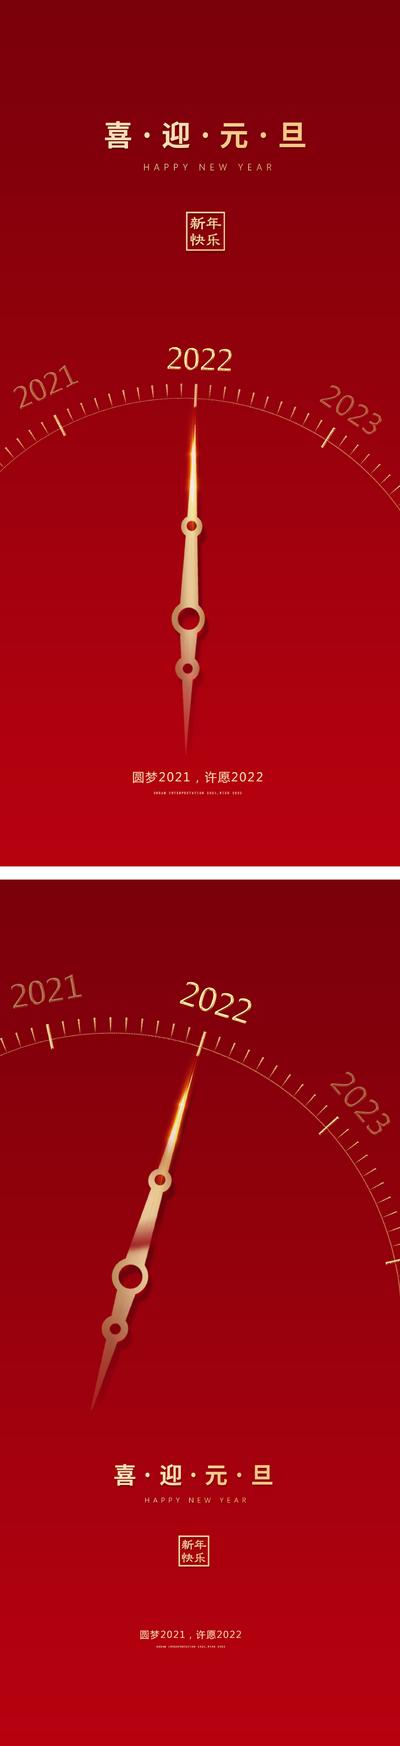 南门网 海报 公历节日 元旦 新年 2022 钟表